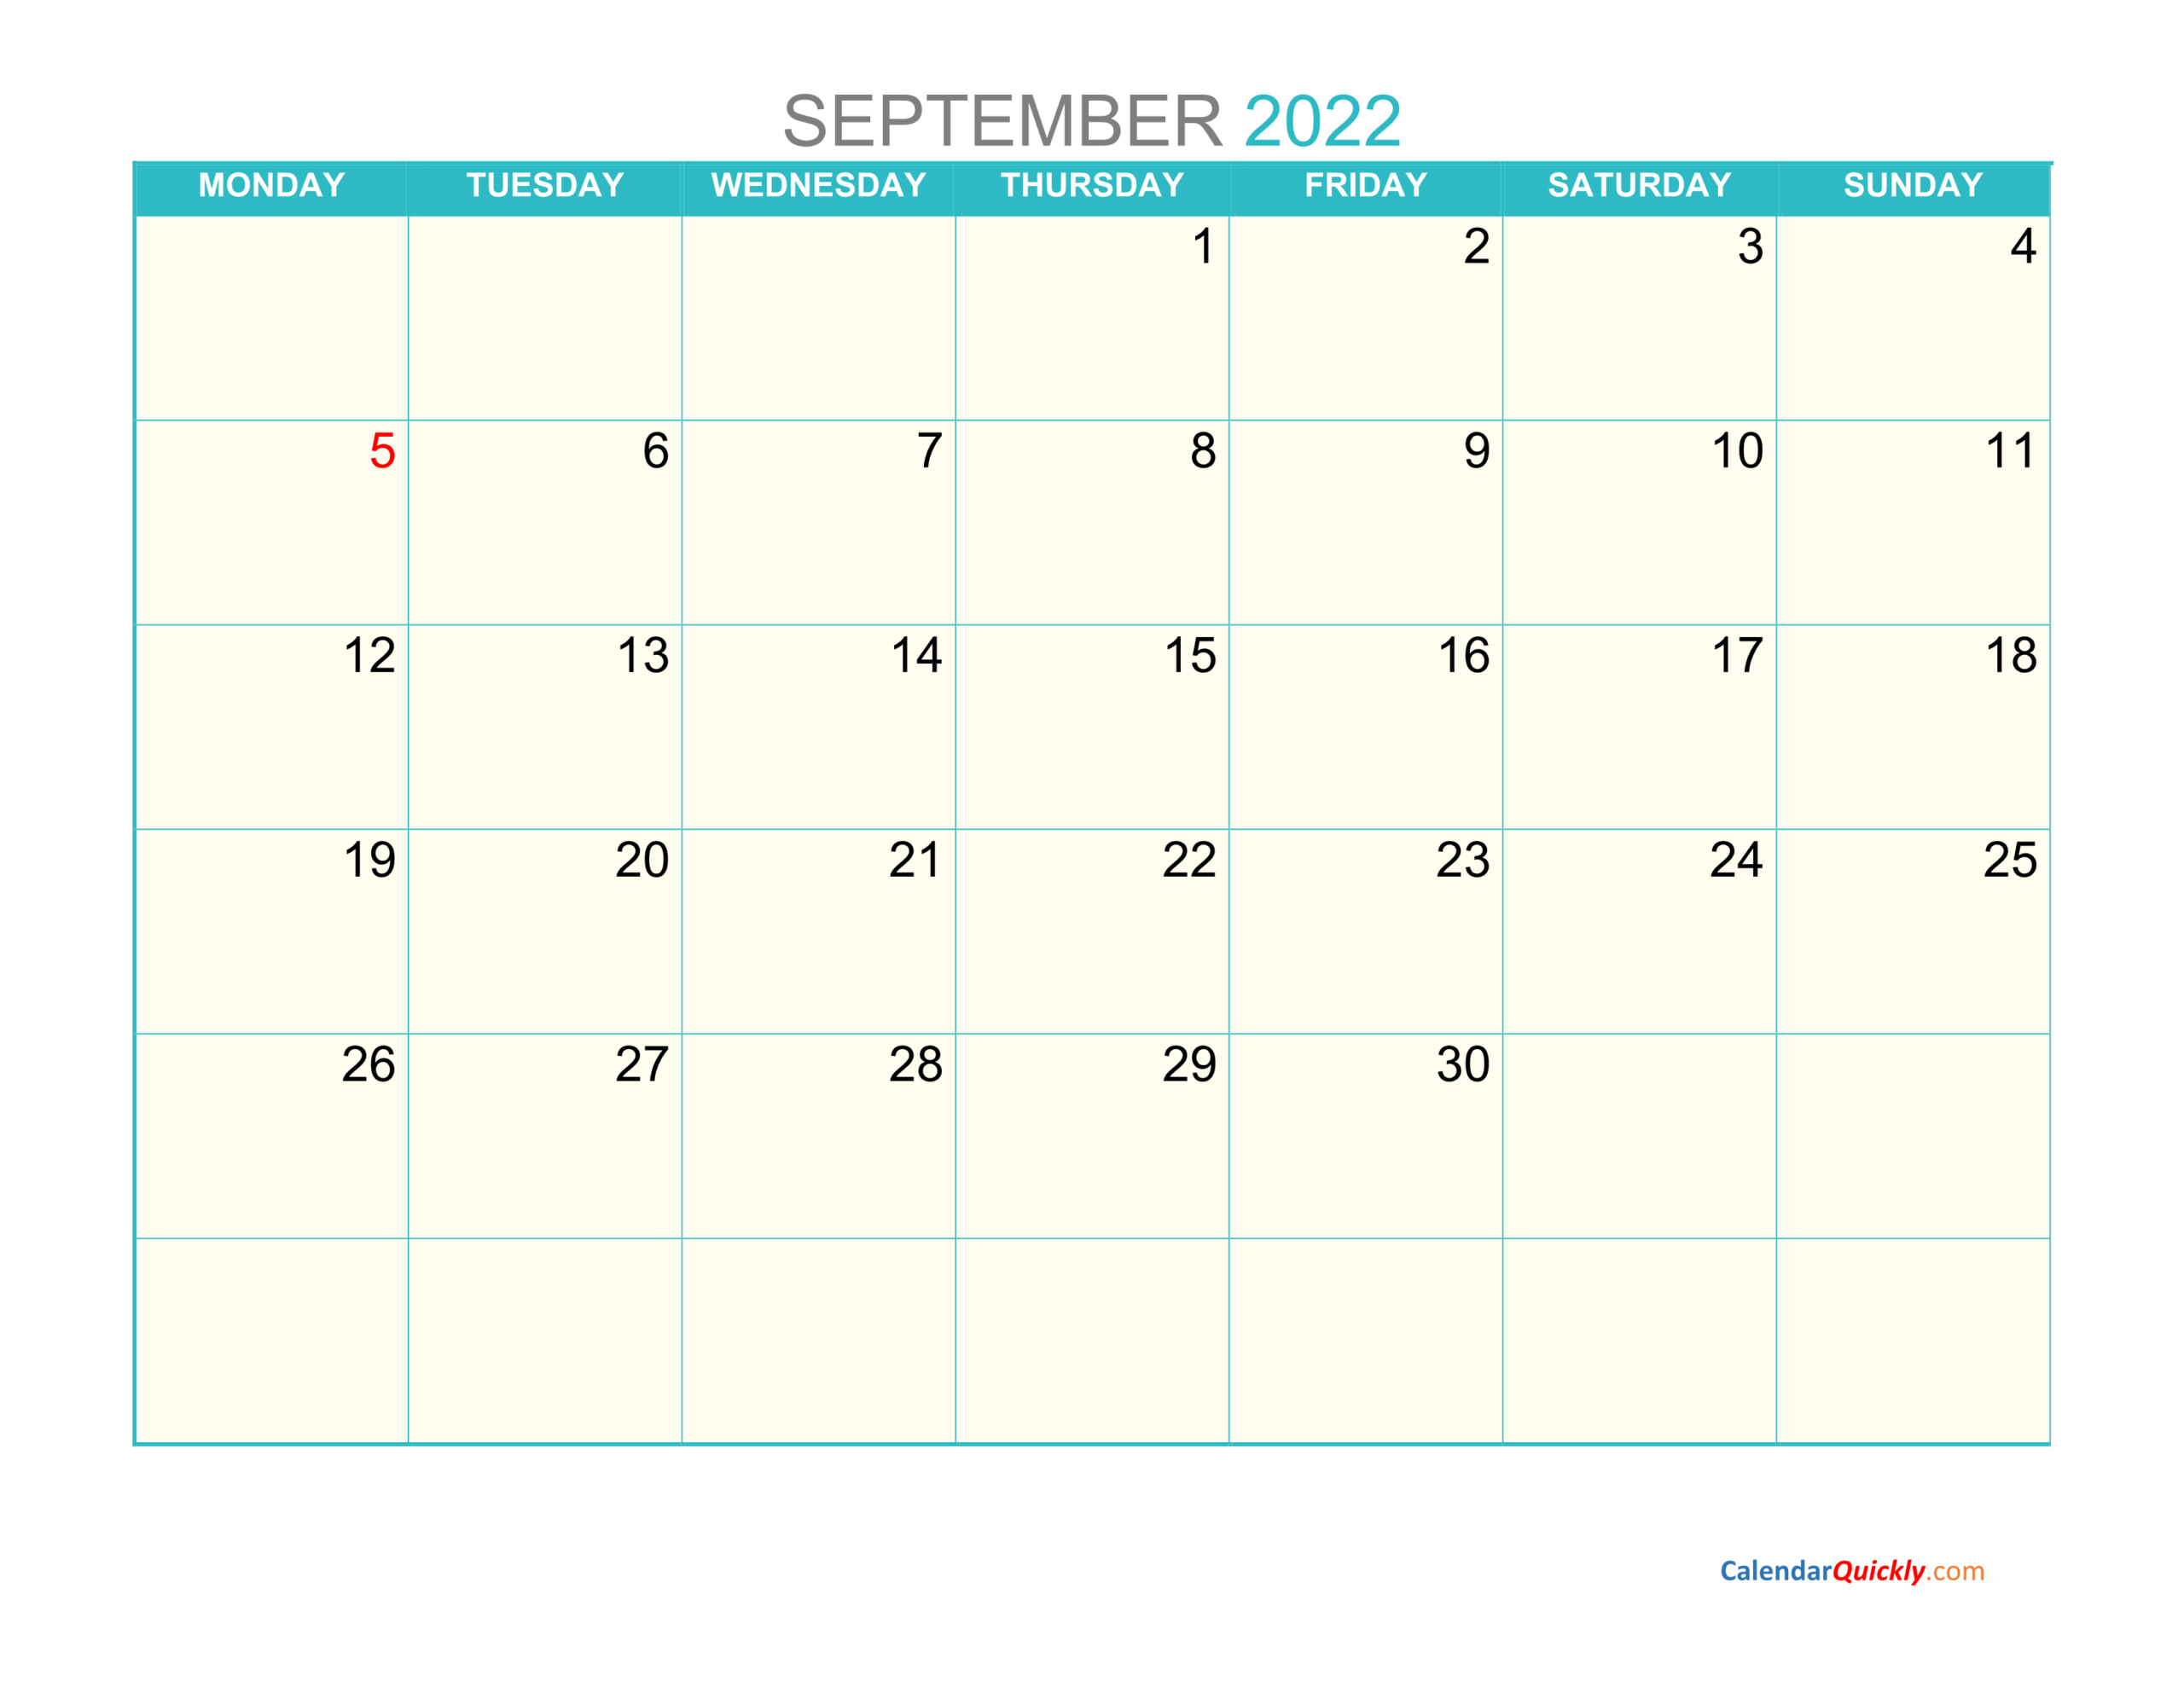 September Monday 2022 Calendar Printable | Calendar Quickly